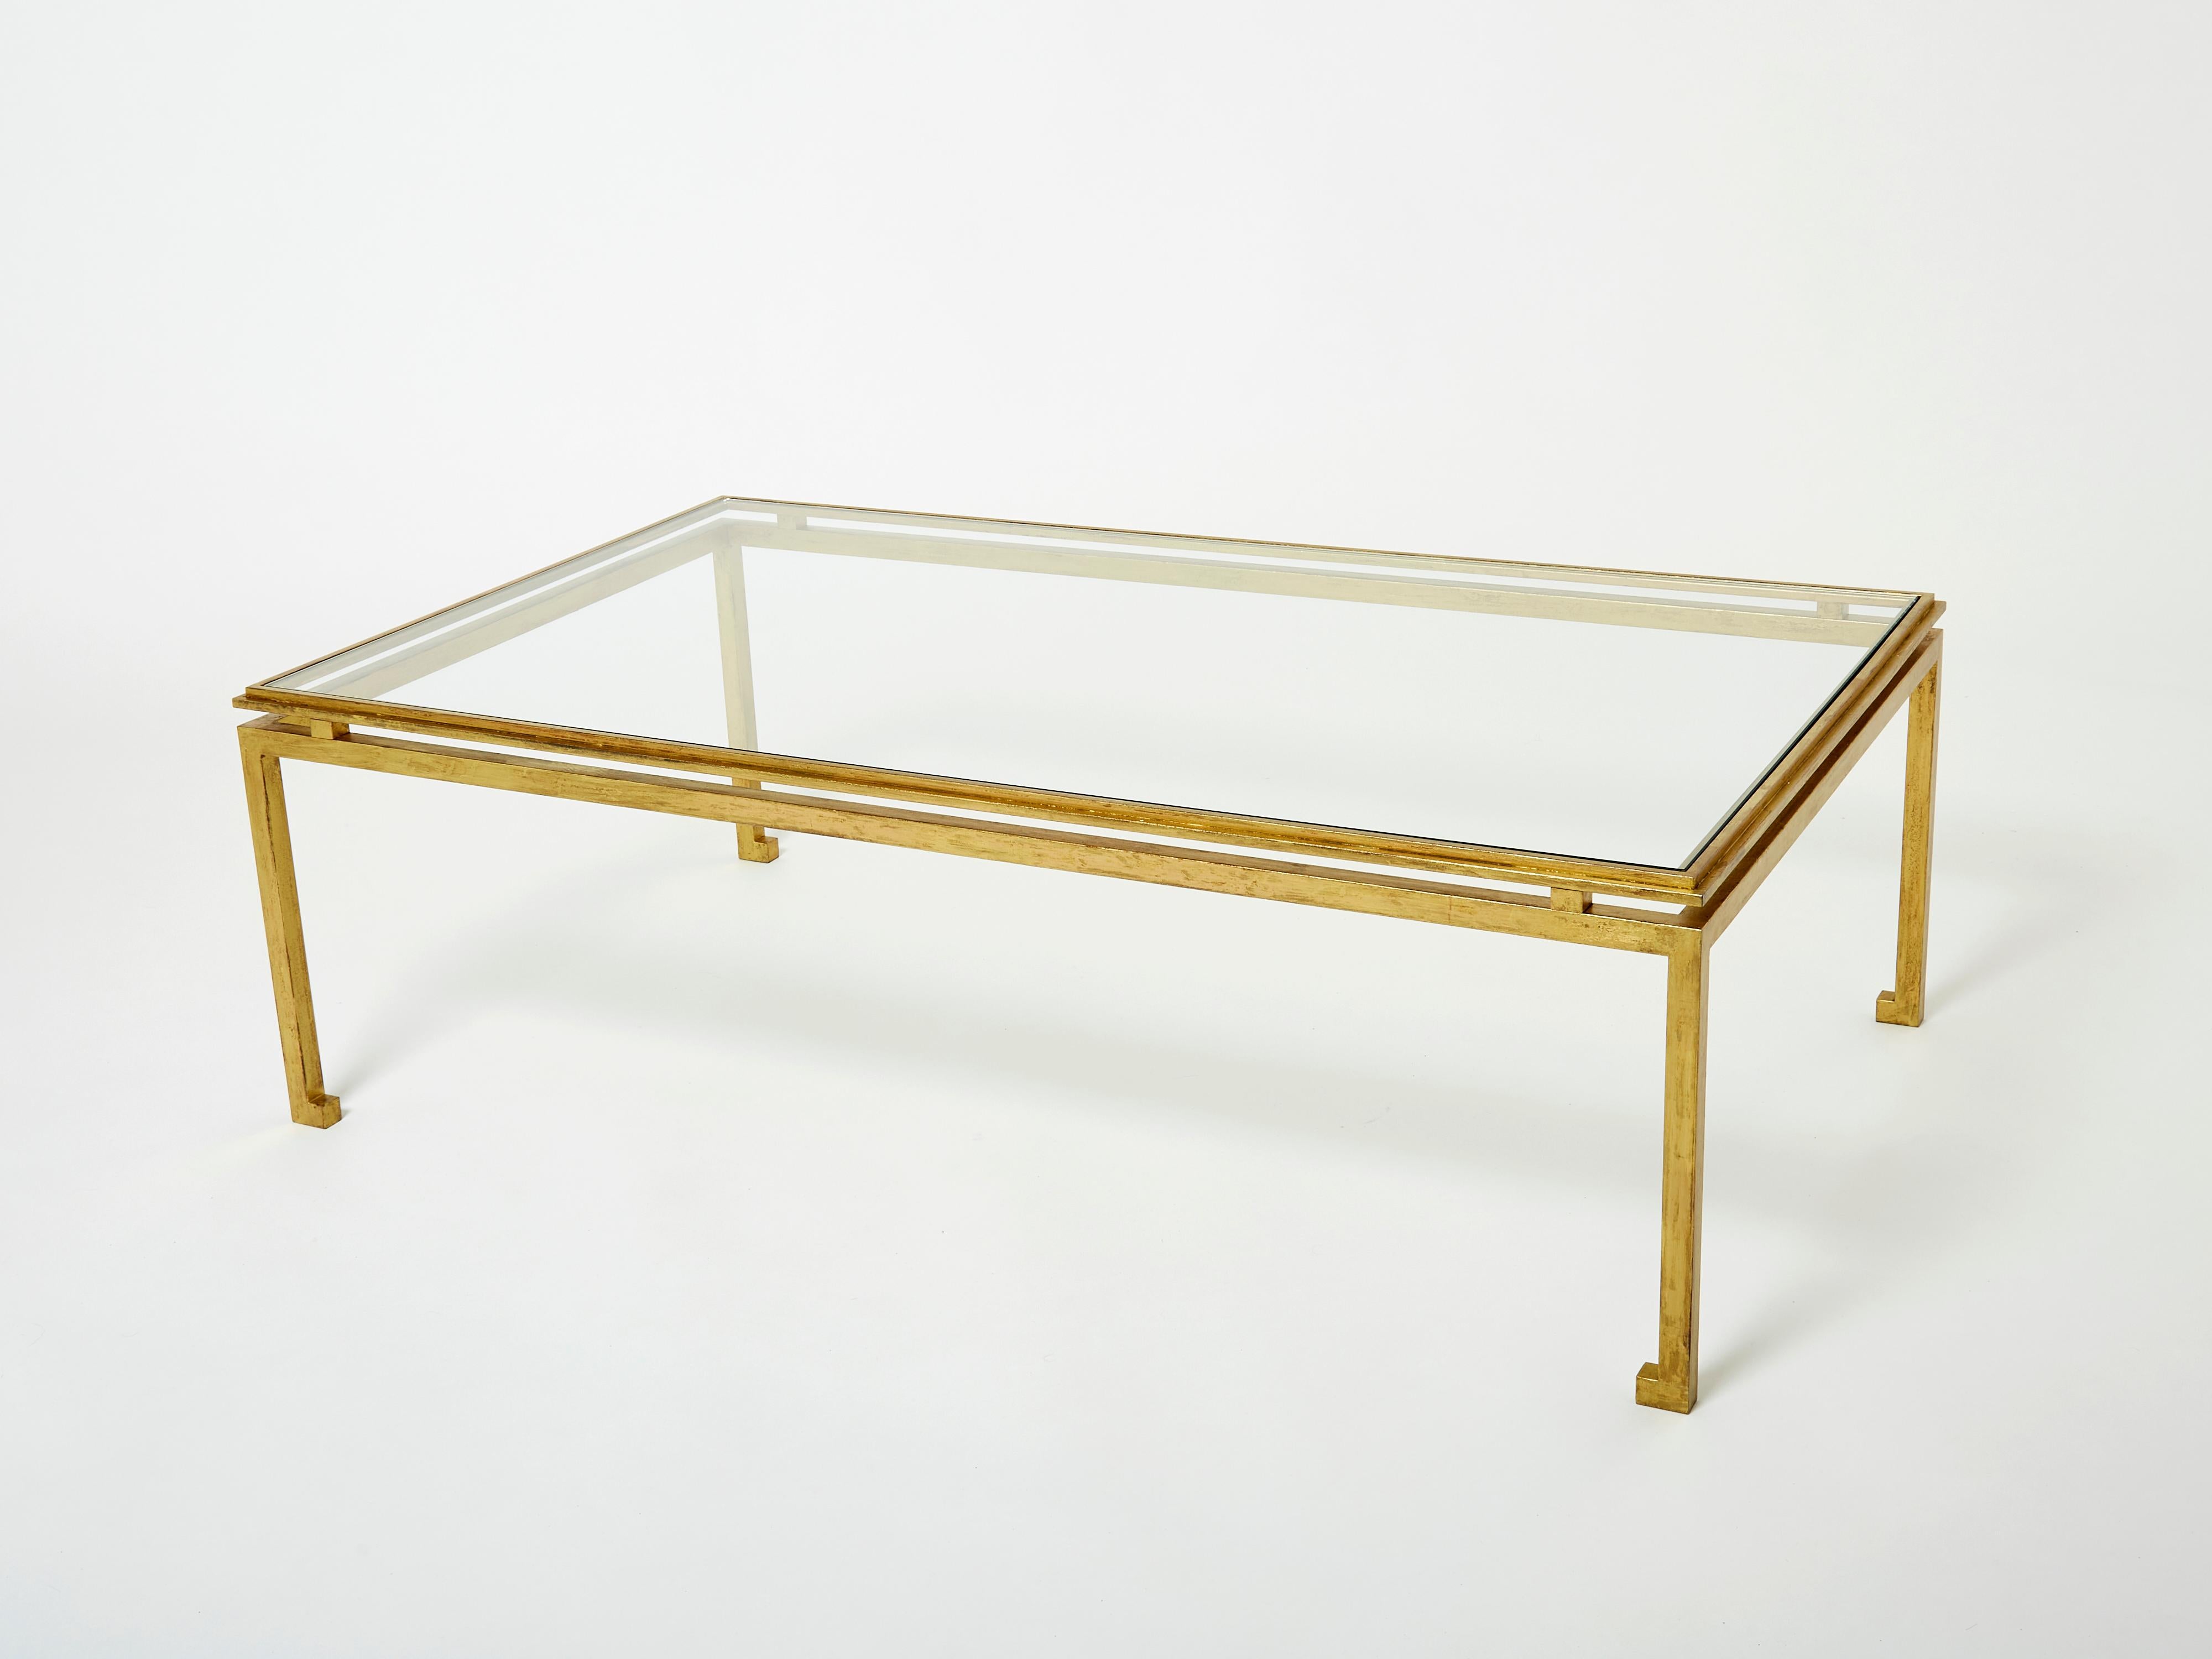 Cette magnifique table basse de la Maison Ramsay date des années 1950 et porte en elle l'ambiance élégante de la période néoclassique post art déco. Les pieds en fer forgé scintillent dans une finition dorée antiquaire, tandis que le plateau en